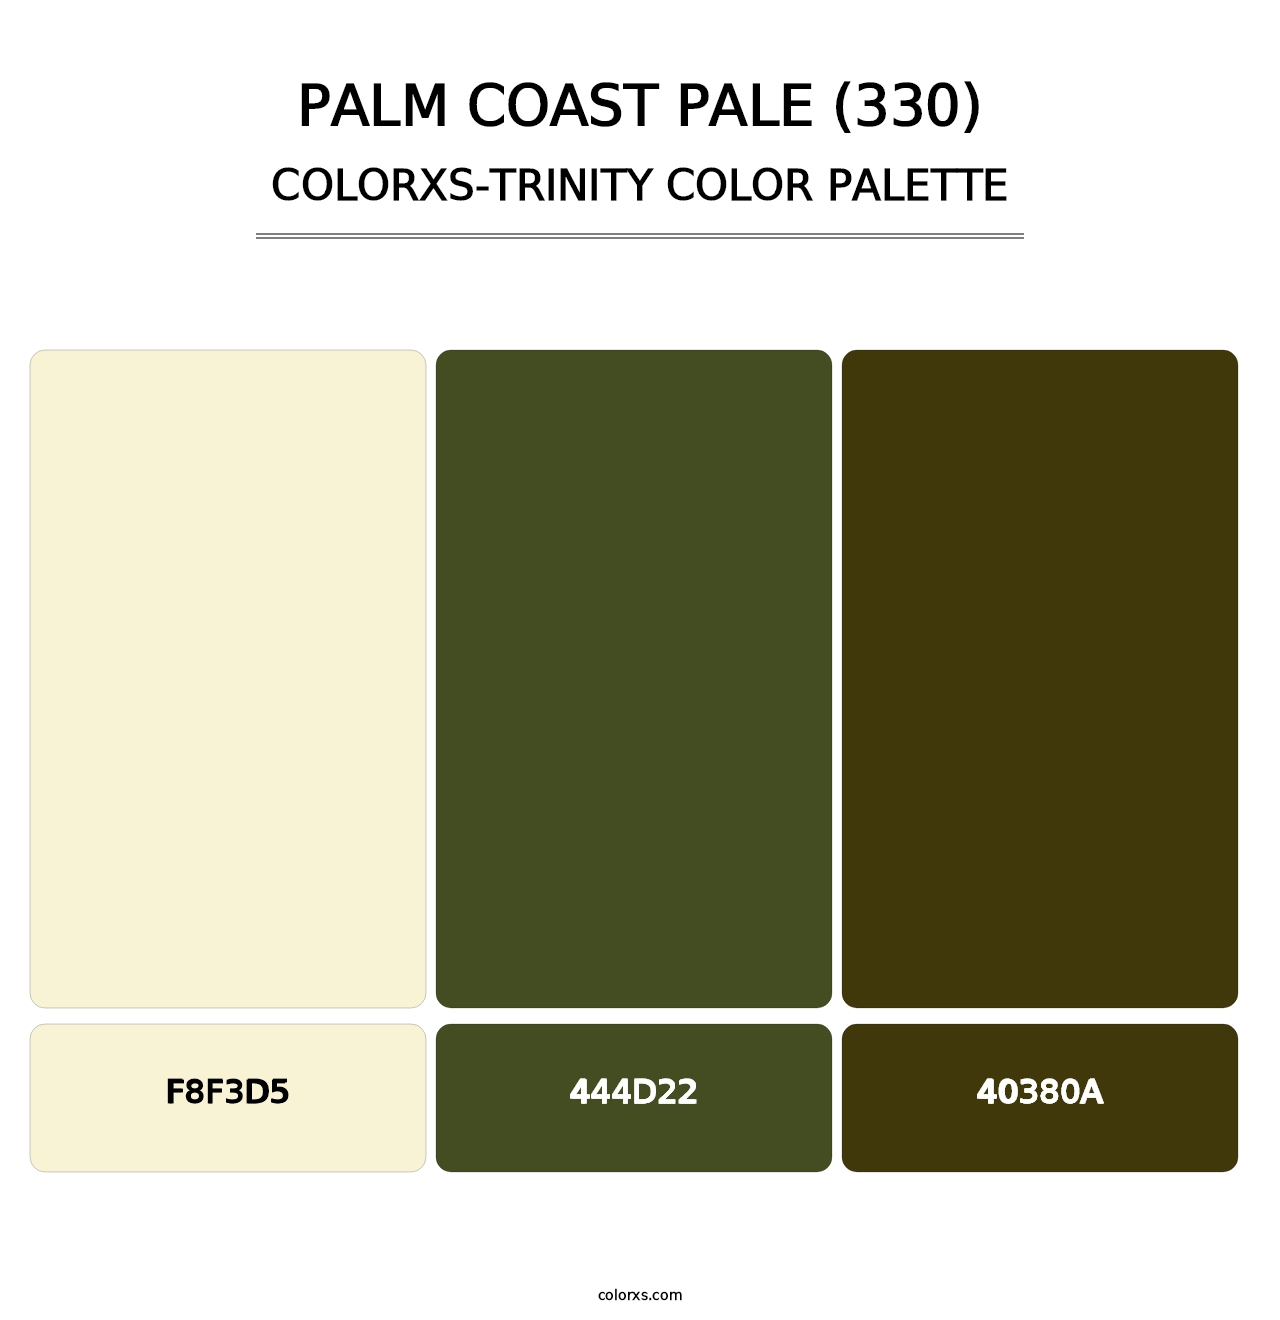 Palm Coast Pale (330) - Colorxs Trinity Palette